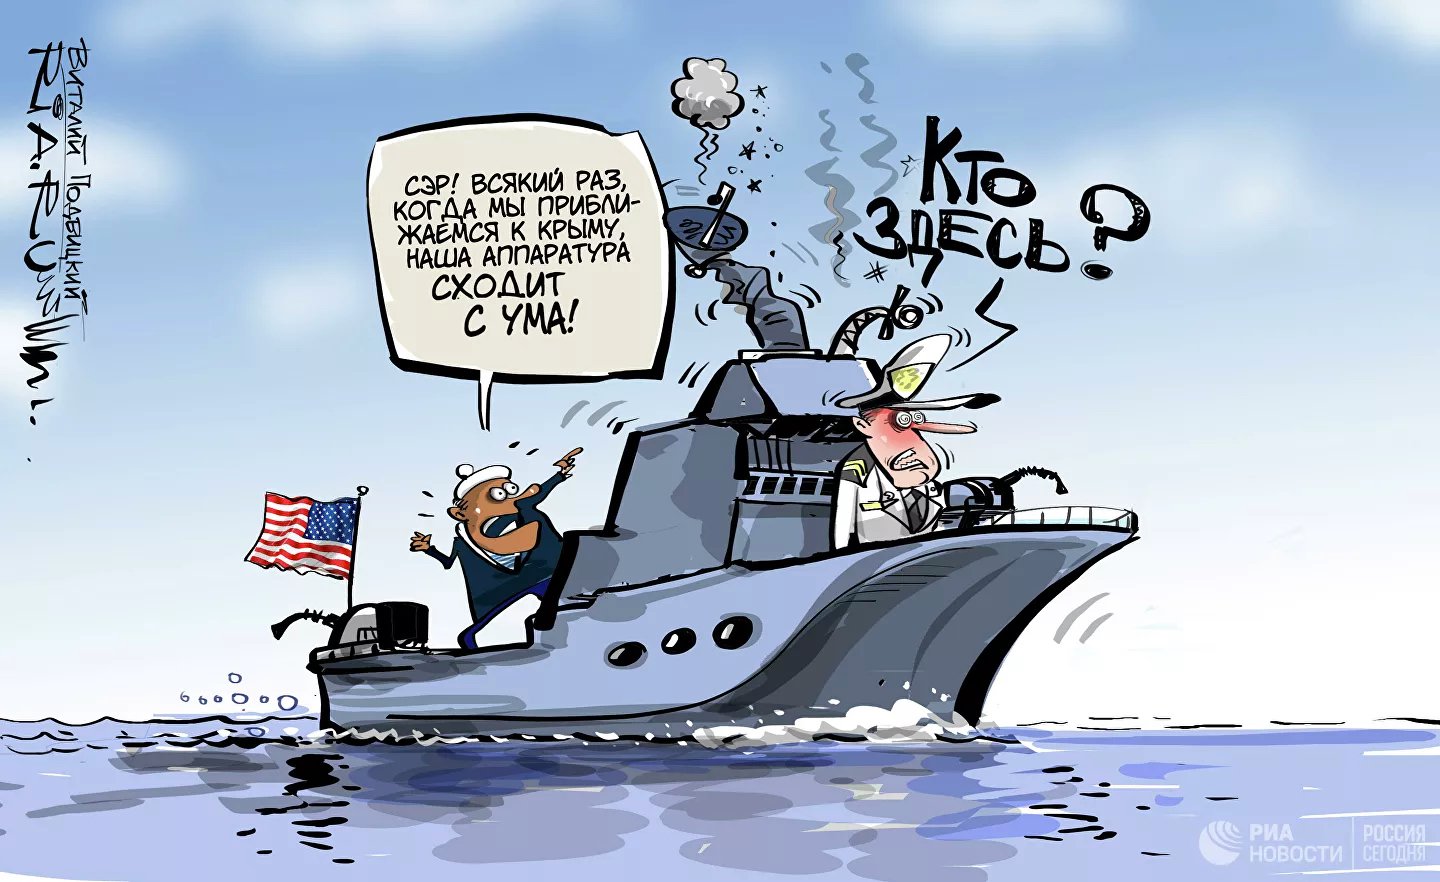 Карикатура "Только смелым покоряются моря", Виталий Подвицкий